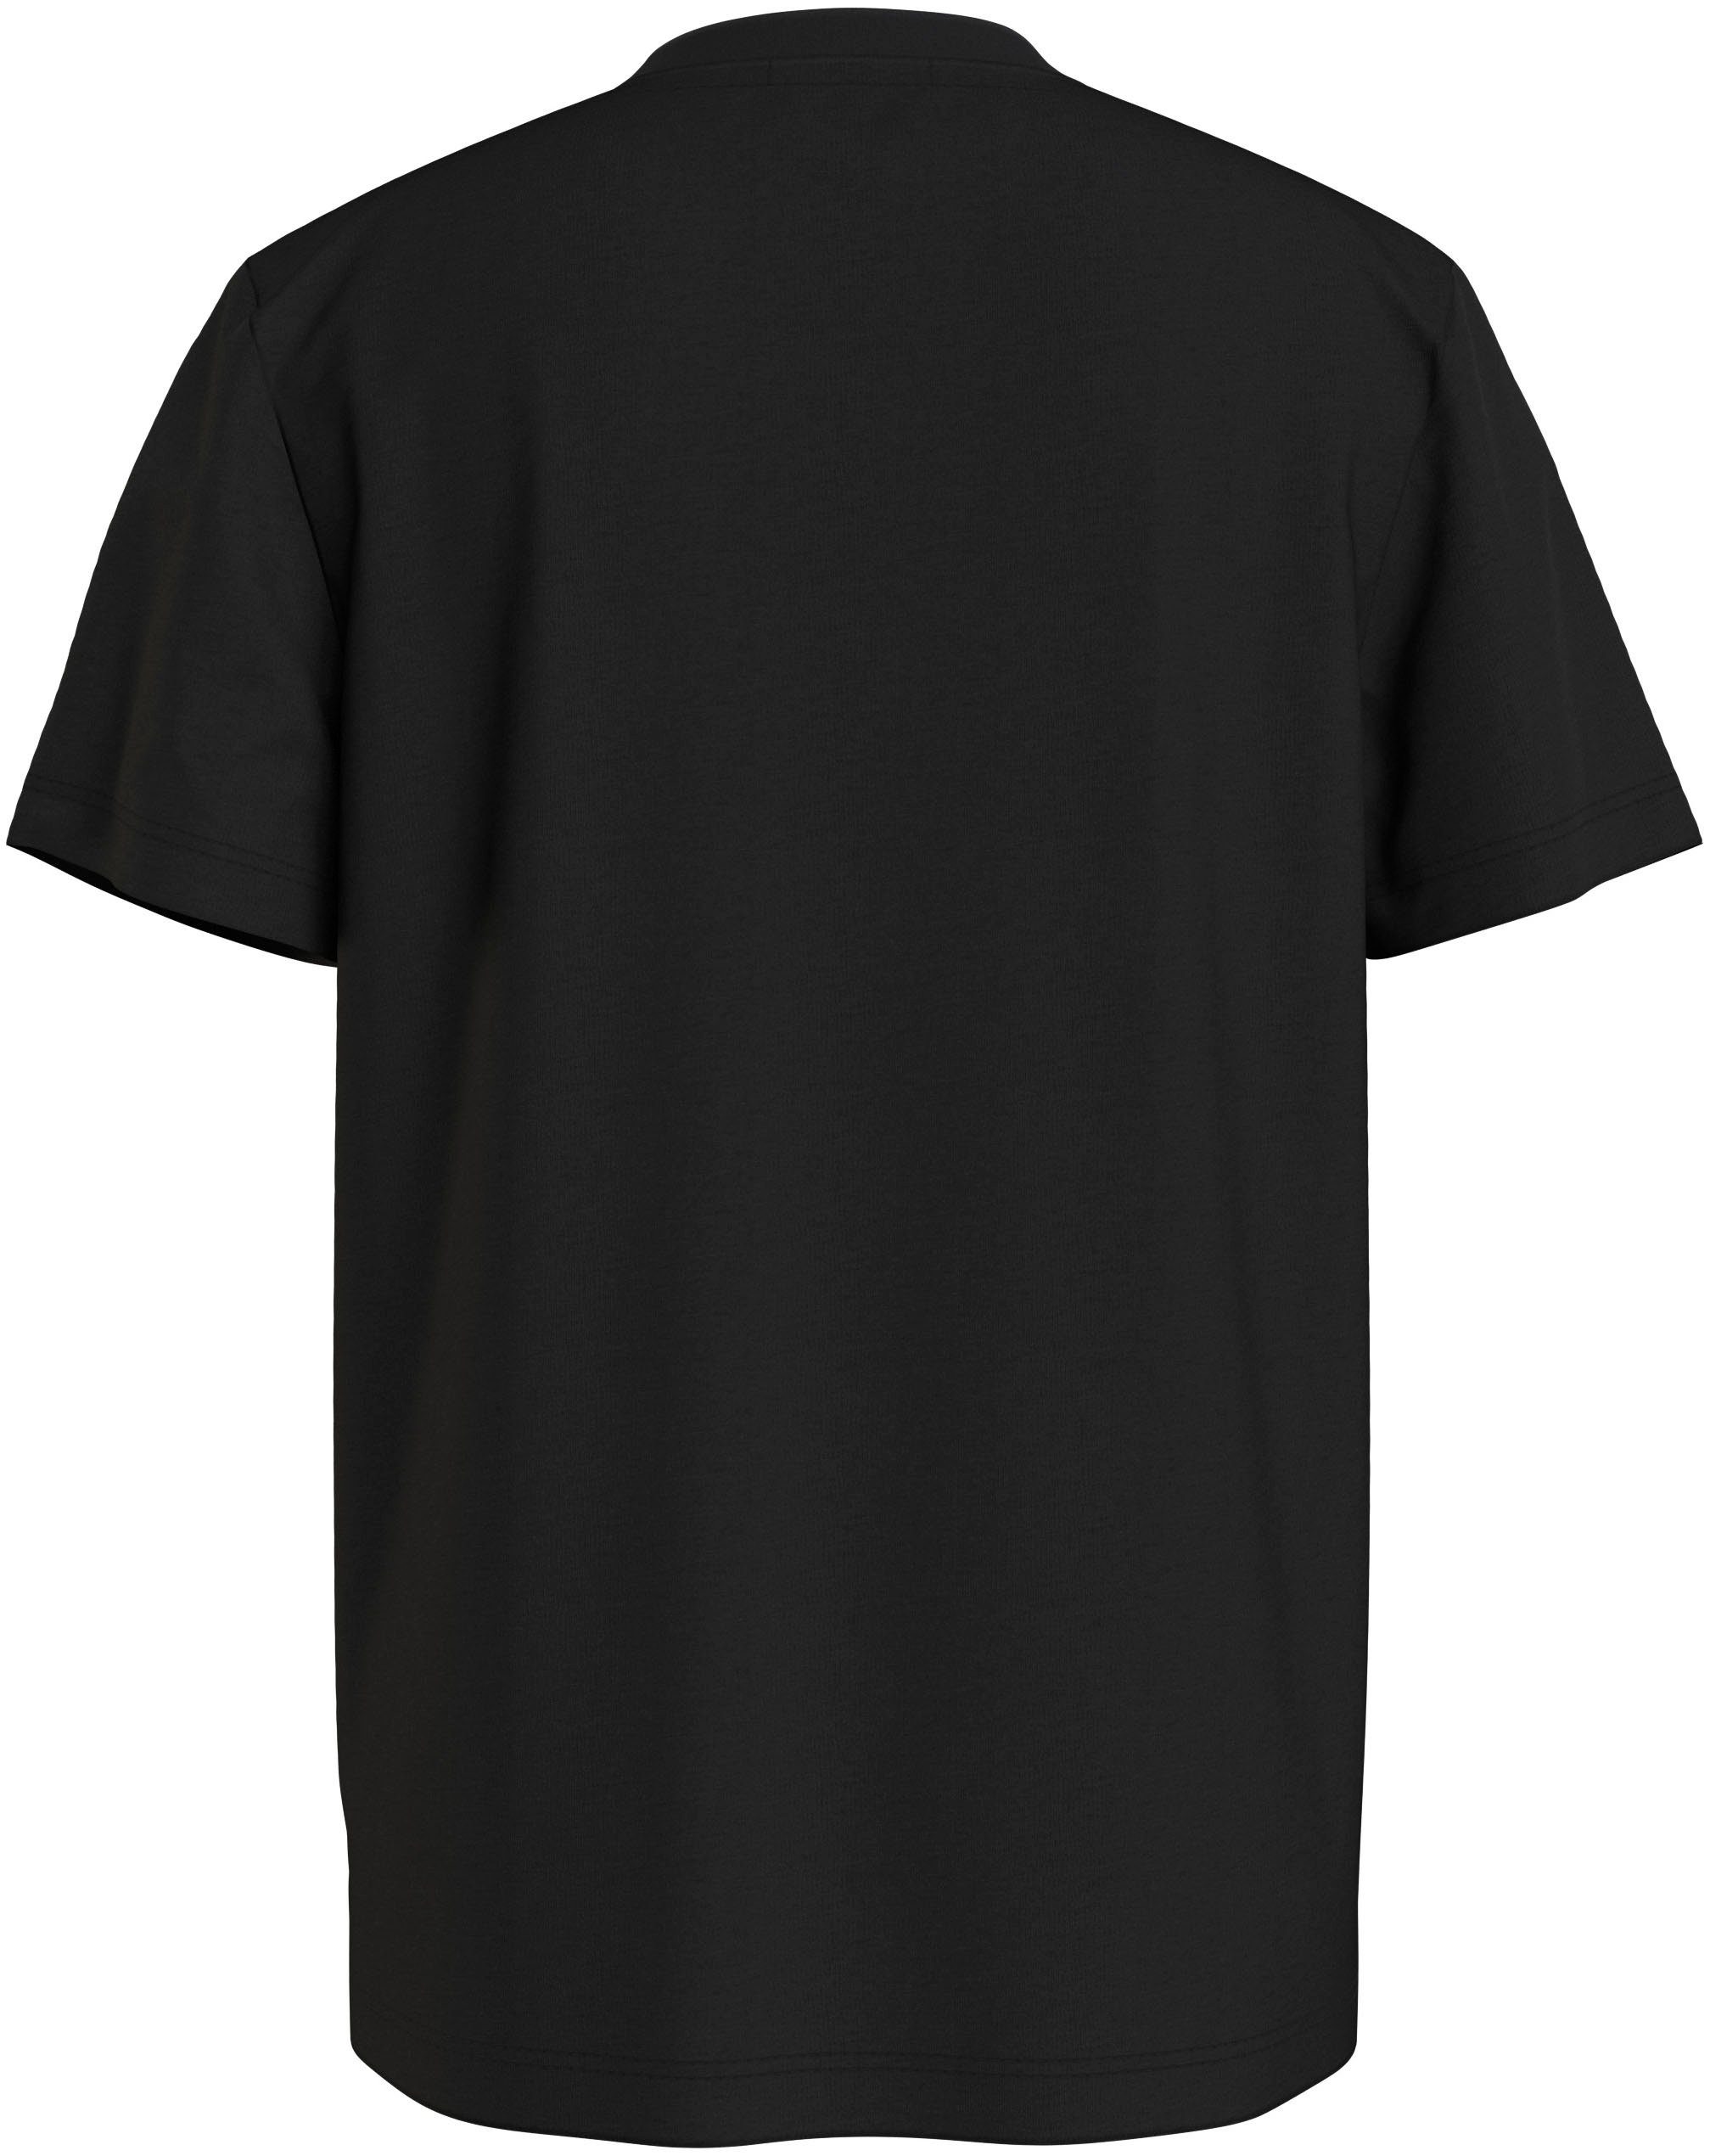 Black SS CK Ck MONOGRAM T-SHIRT Jeans T-Shirt Calvin Klein